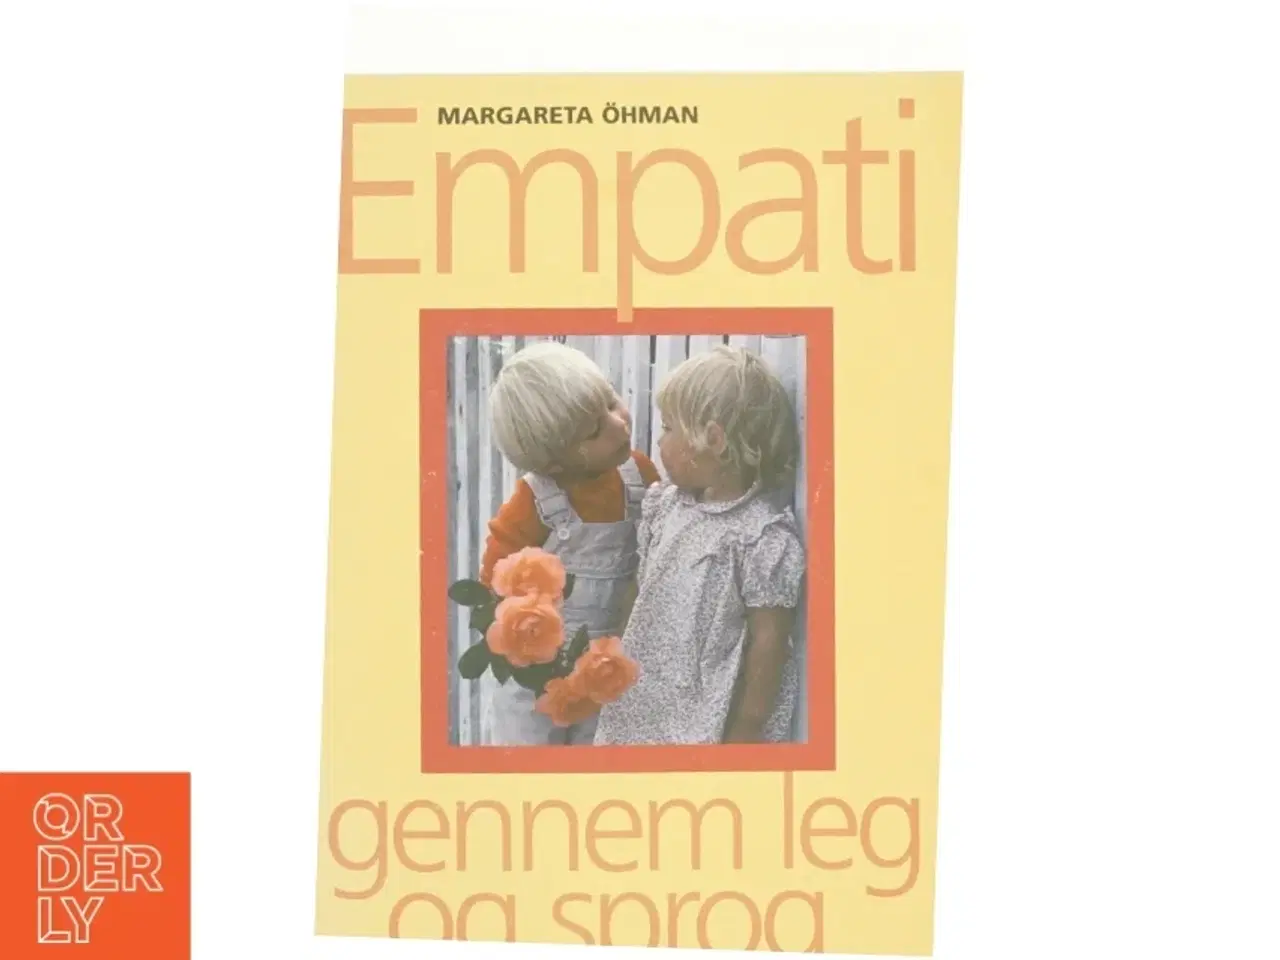 Billede 1 - Empati gennem leg og sprog af Margareta Öhman